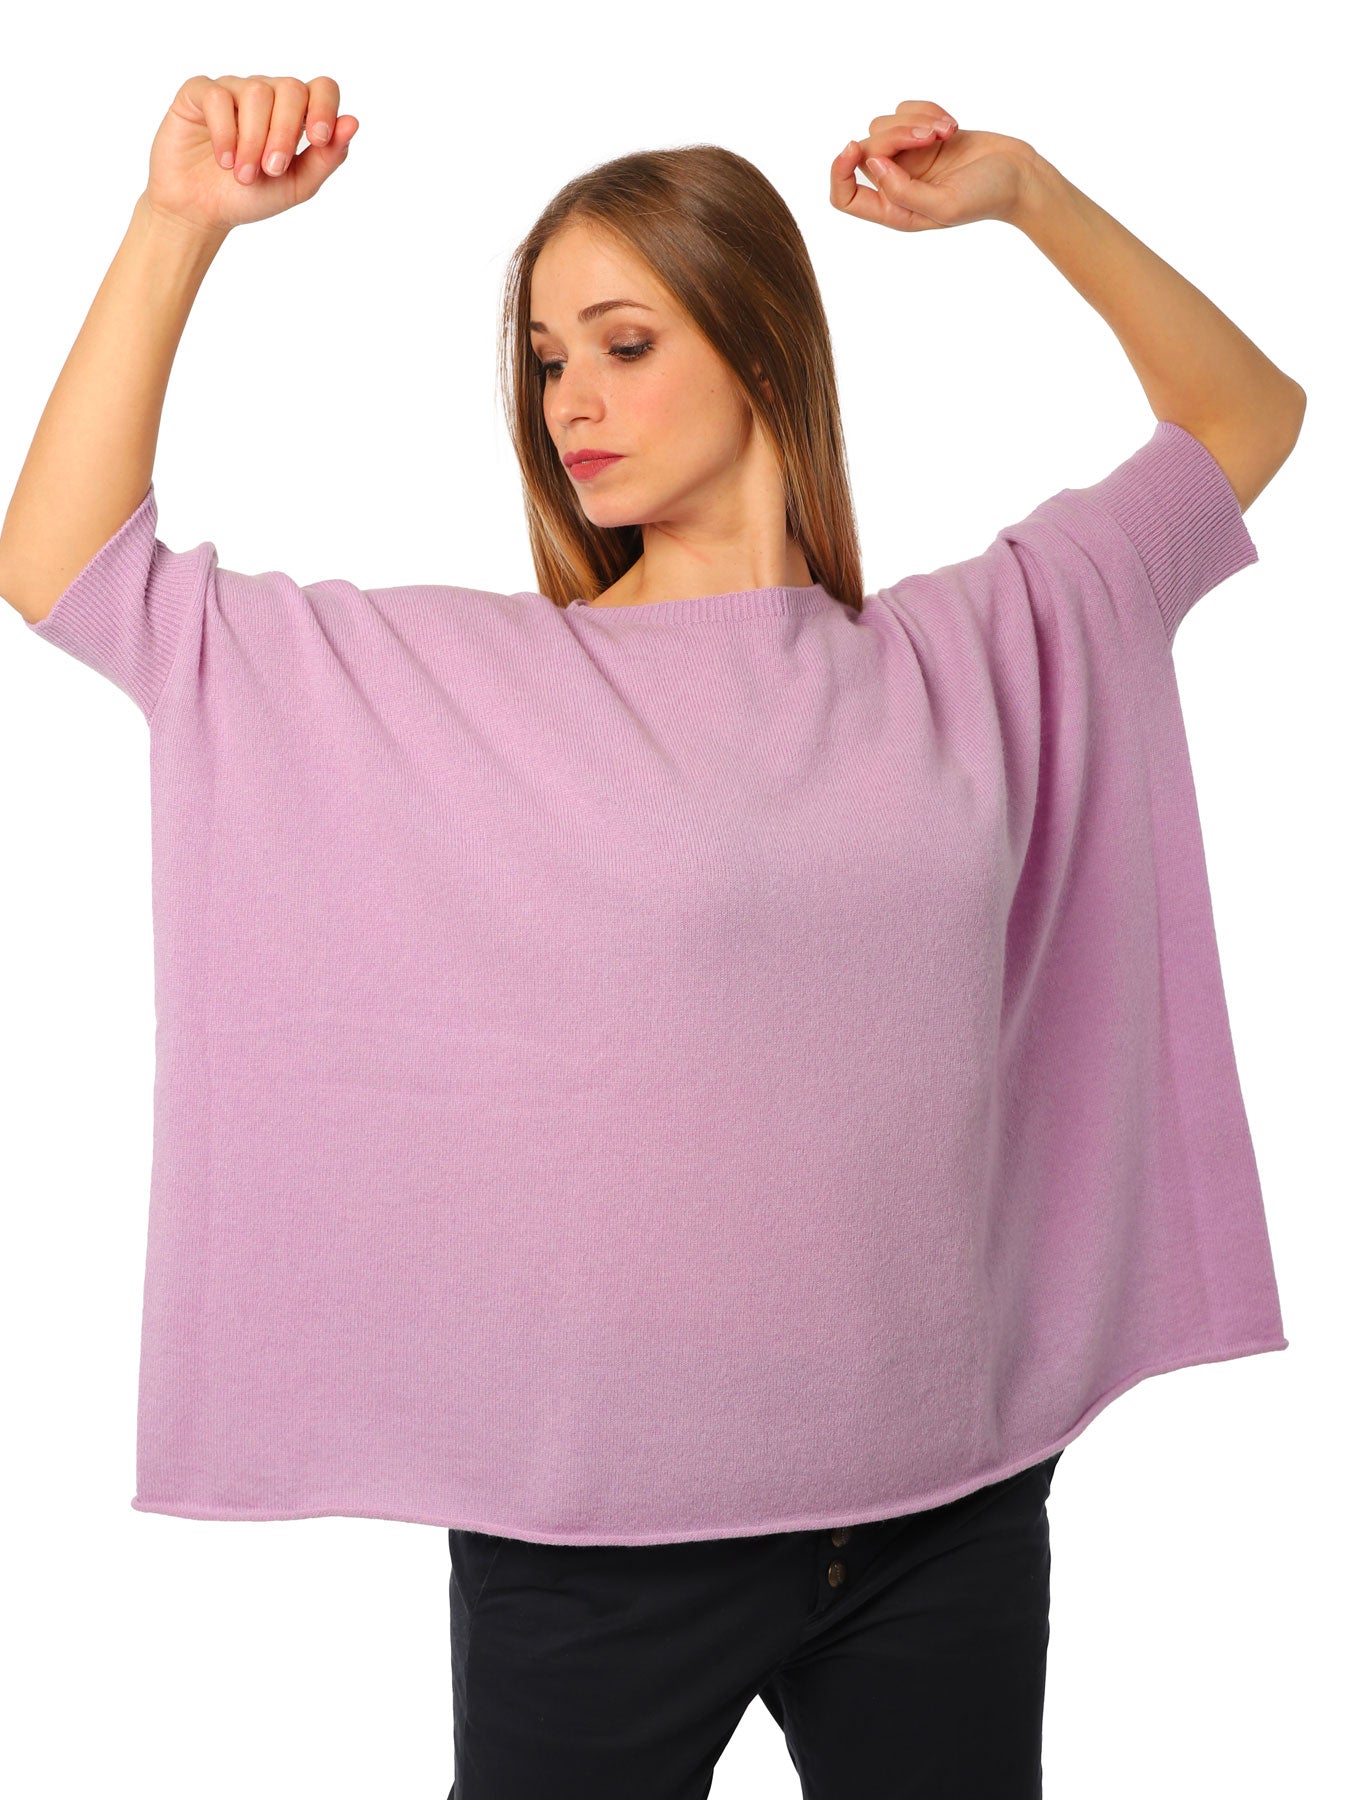 Women's boxy sweater